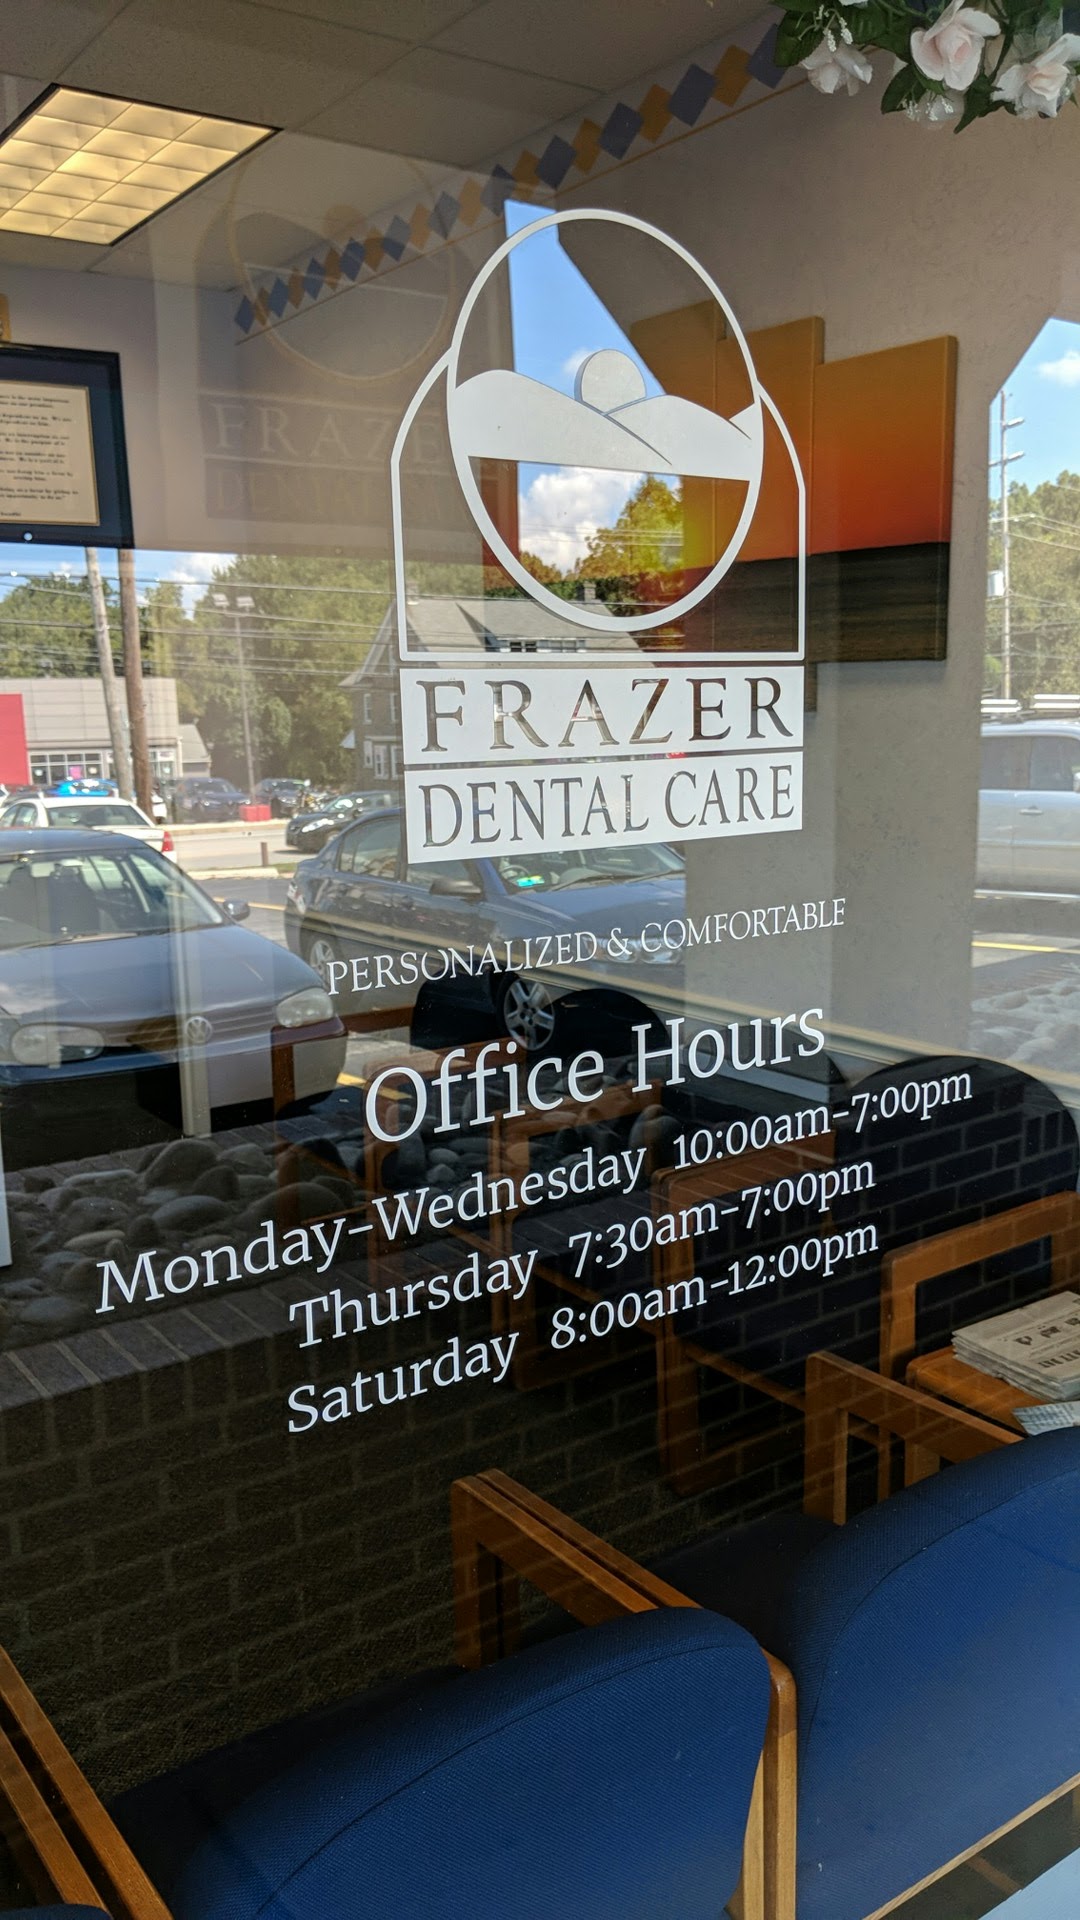 Frazer Dental Care 480 Lancaster Ave #17, Frazer Pennsylvania 19355